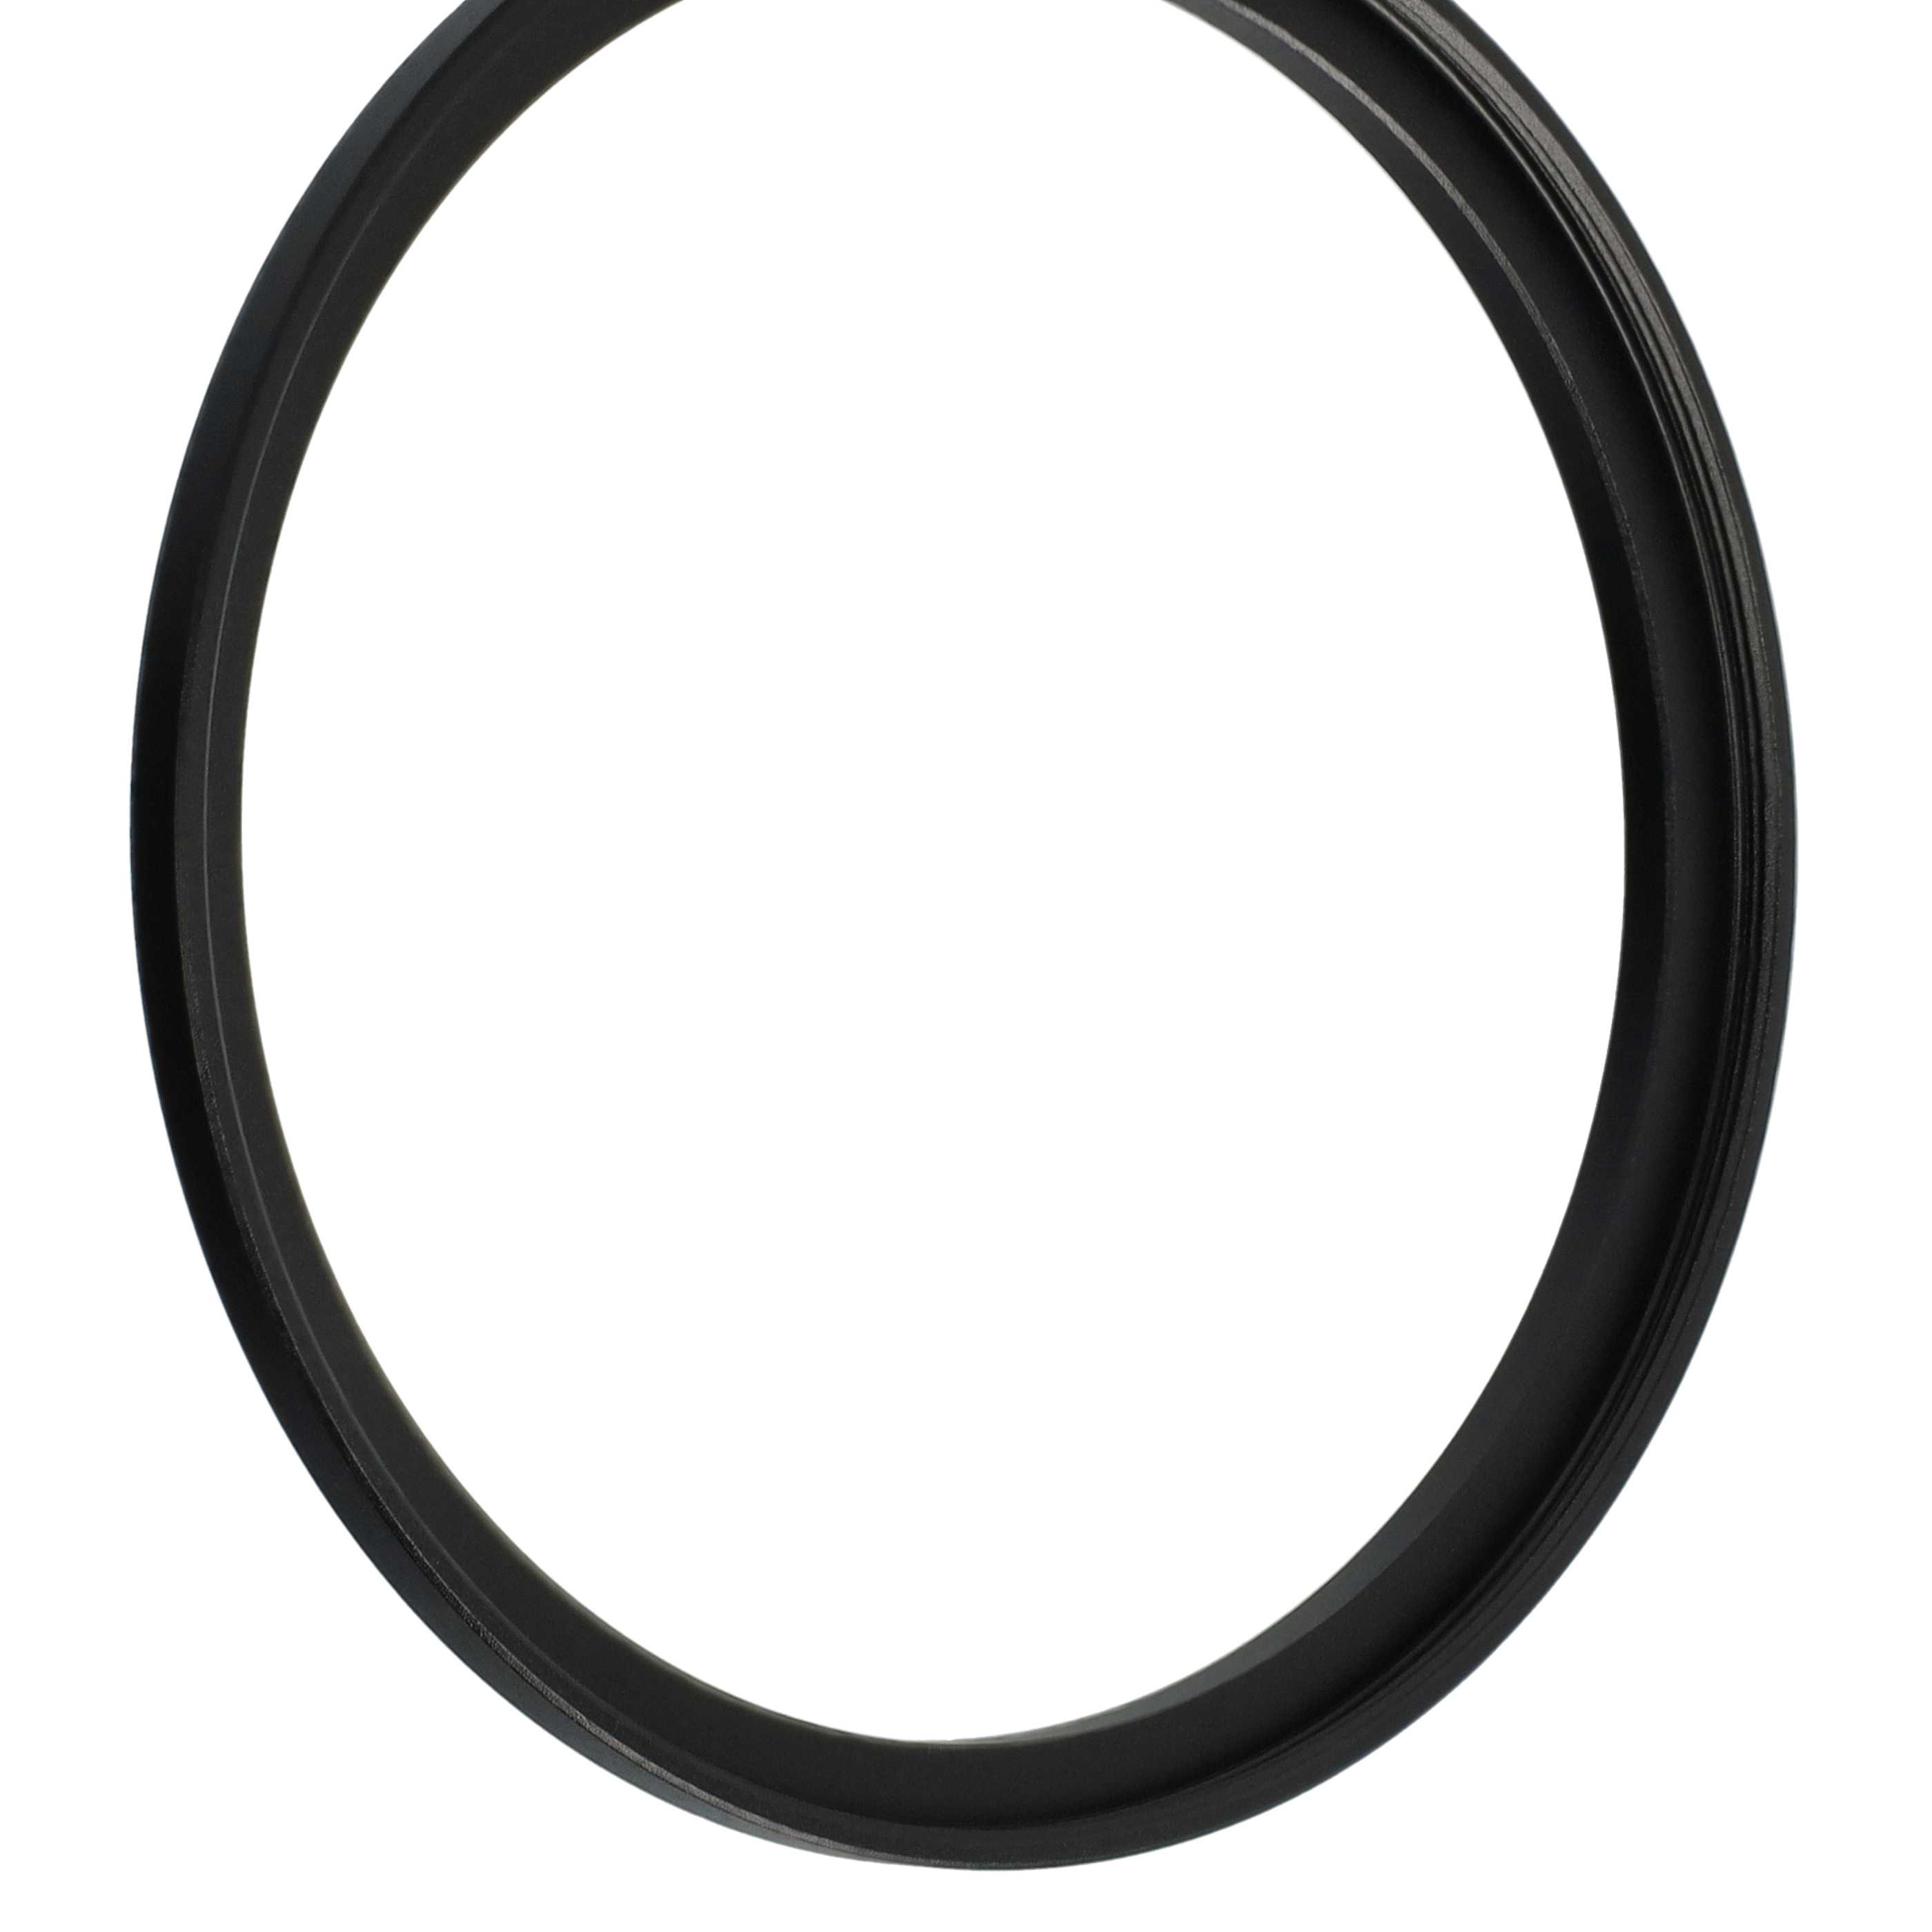 Step-Up-Ring Adapter 77 mm auf 82 mm passend für diverse Kamera-Objektive - Filteradapter